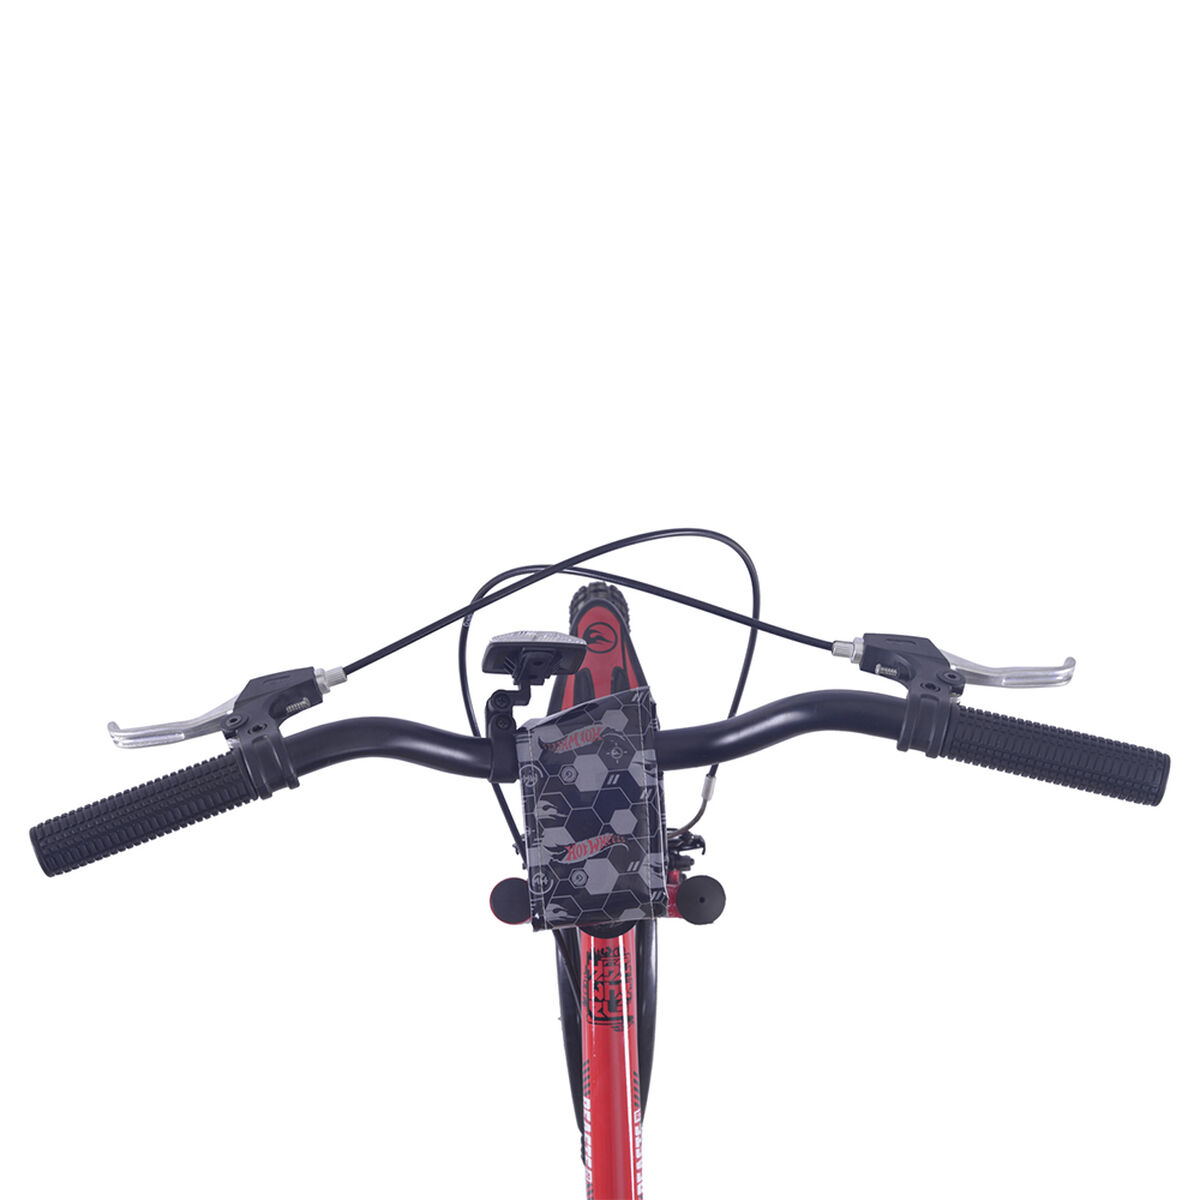 Bicicleta Bianchi Hotwheels Aro 20 Rojo